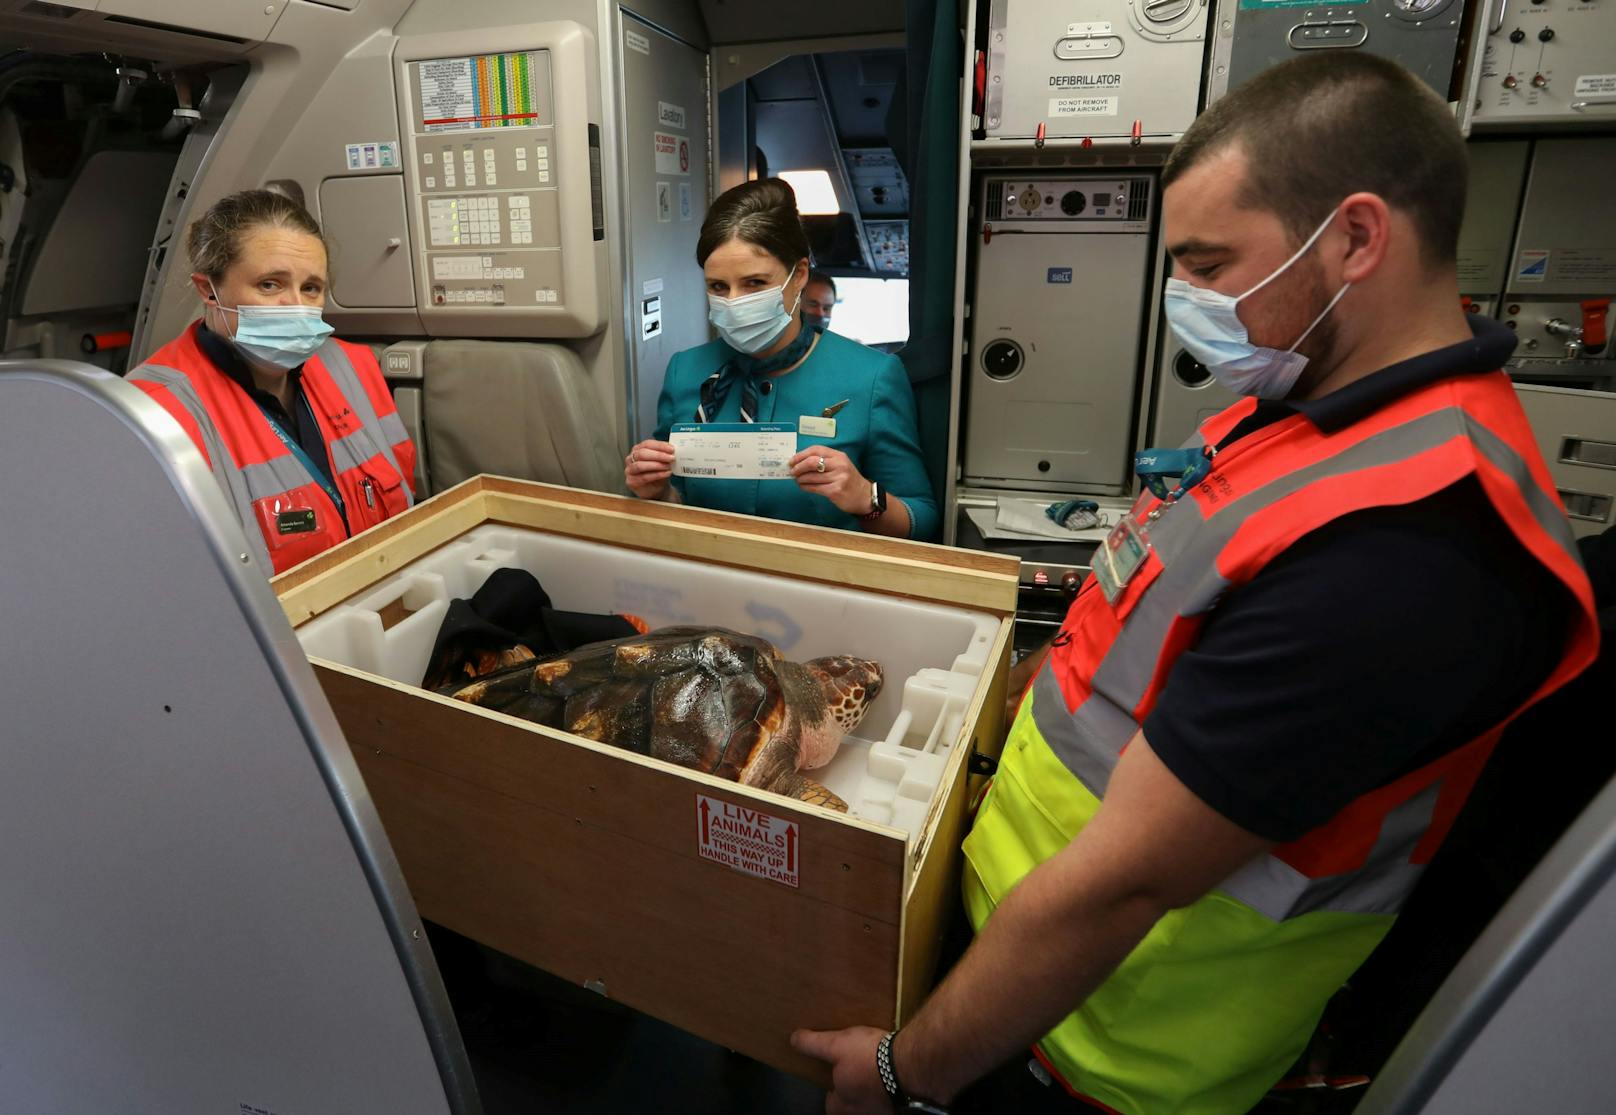 Die Mitarbeiter der Fluggesellschaft "Air Lingus" kümmerten sich während des gesamten Fluges rührend um den ungewöhnlichen Passagier. <br>